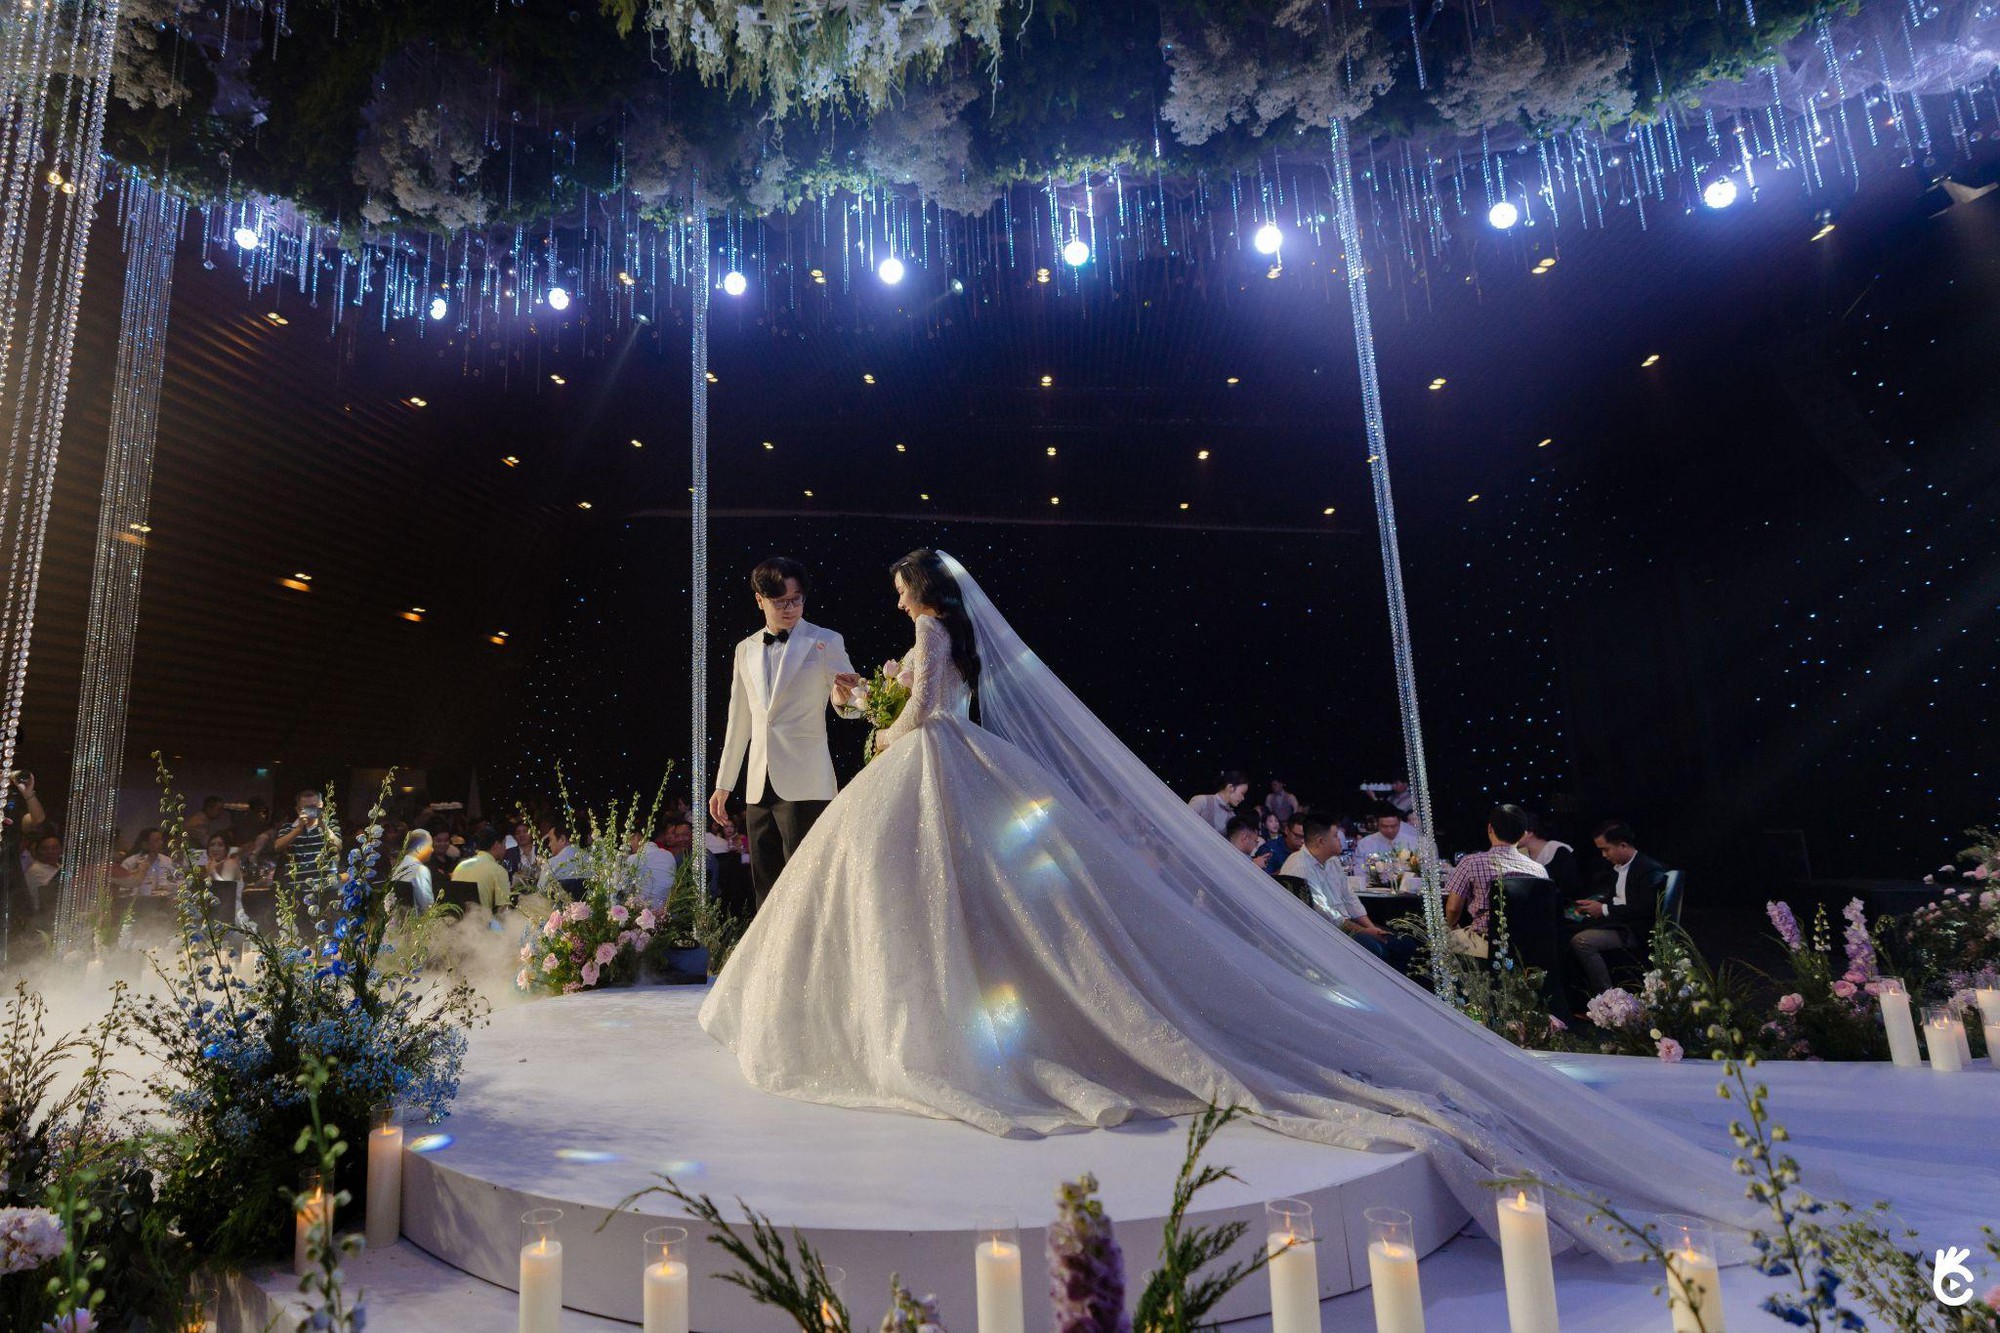 Mãn nhãn trước khoảnh khắc hiện thực hoá lễ cưới trong mơ “Garden Deste Wedding” - Ảnh 4.